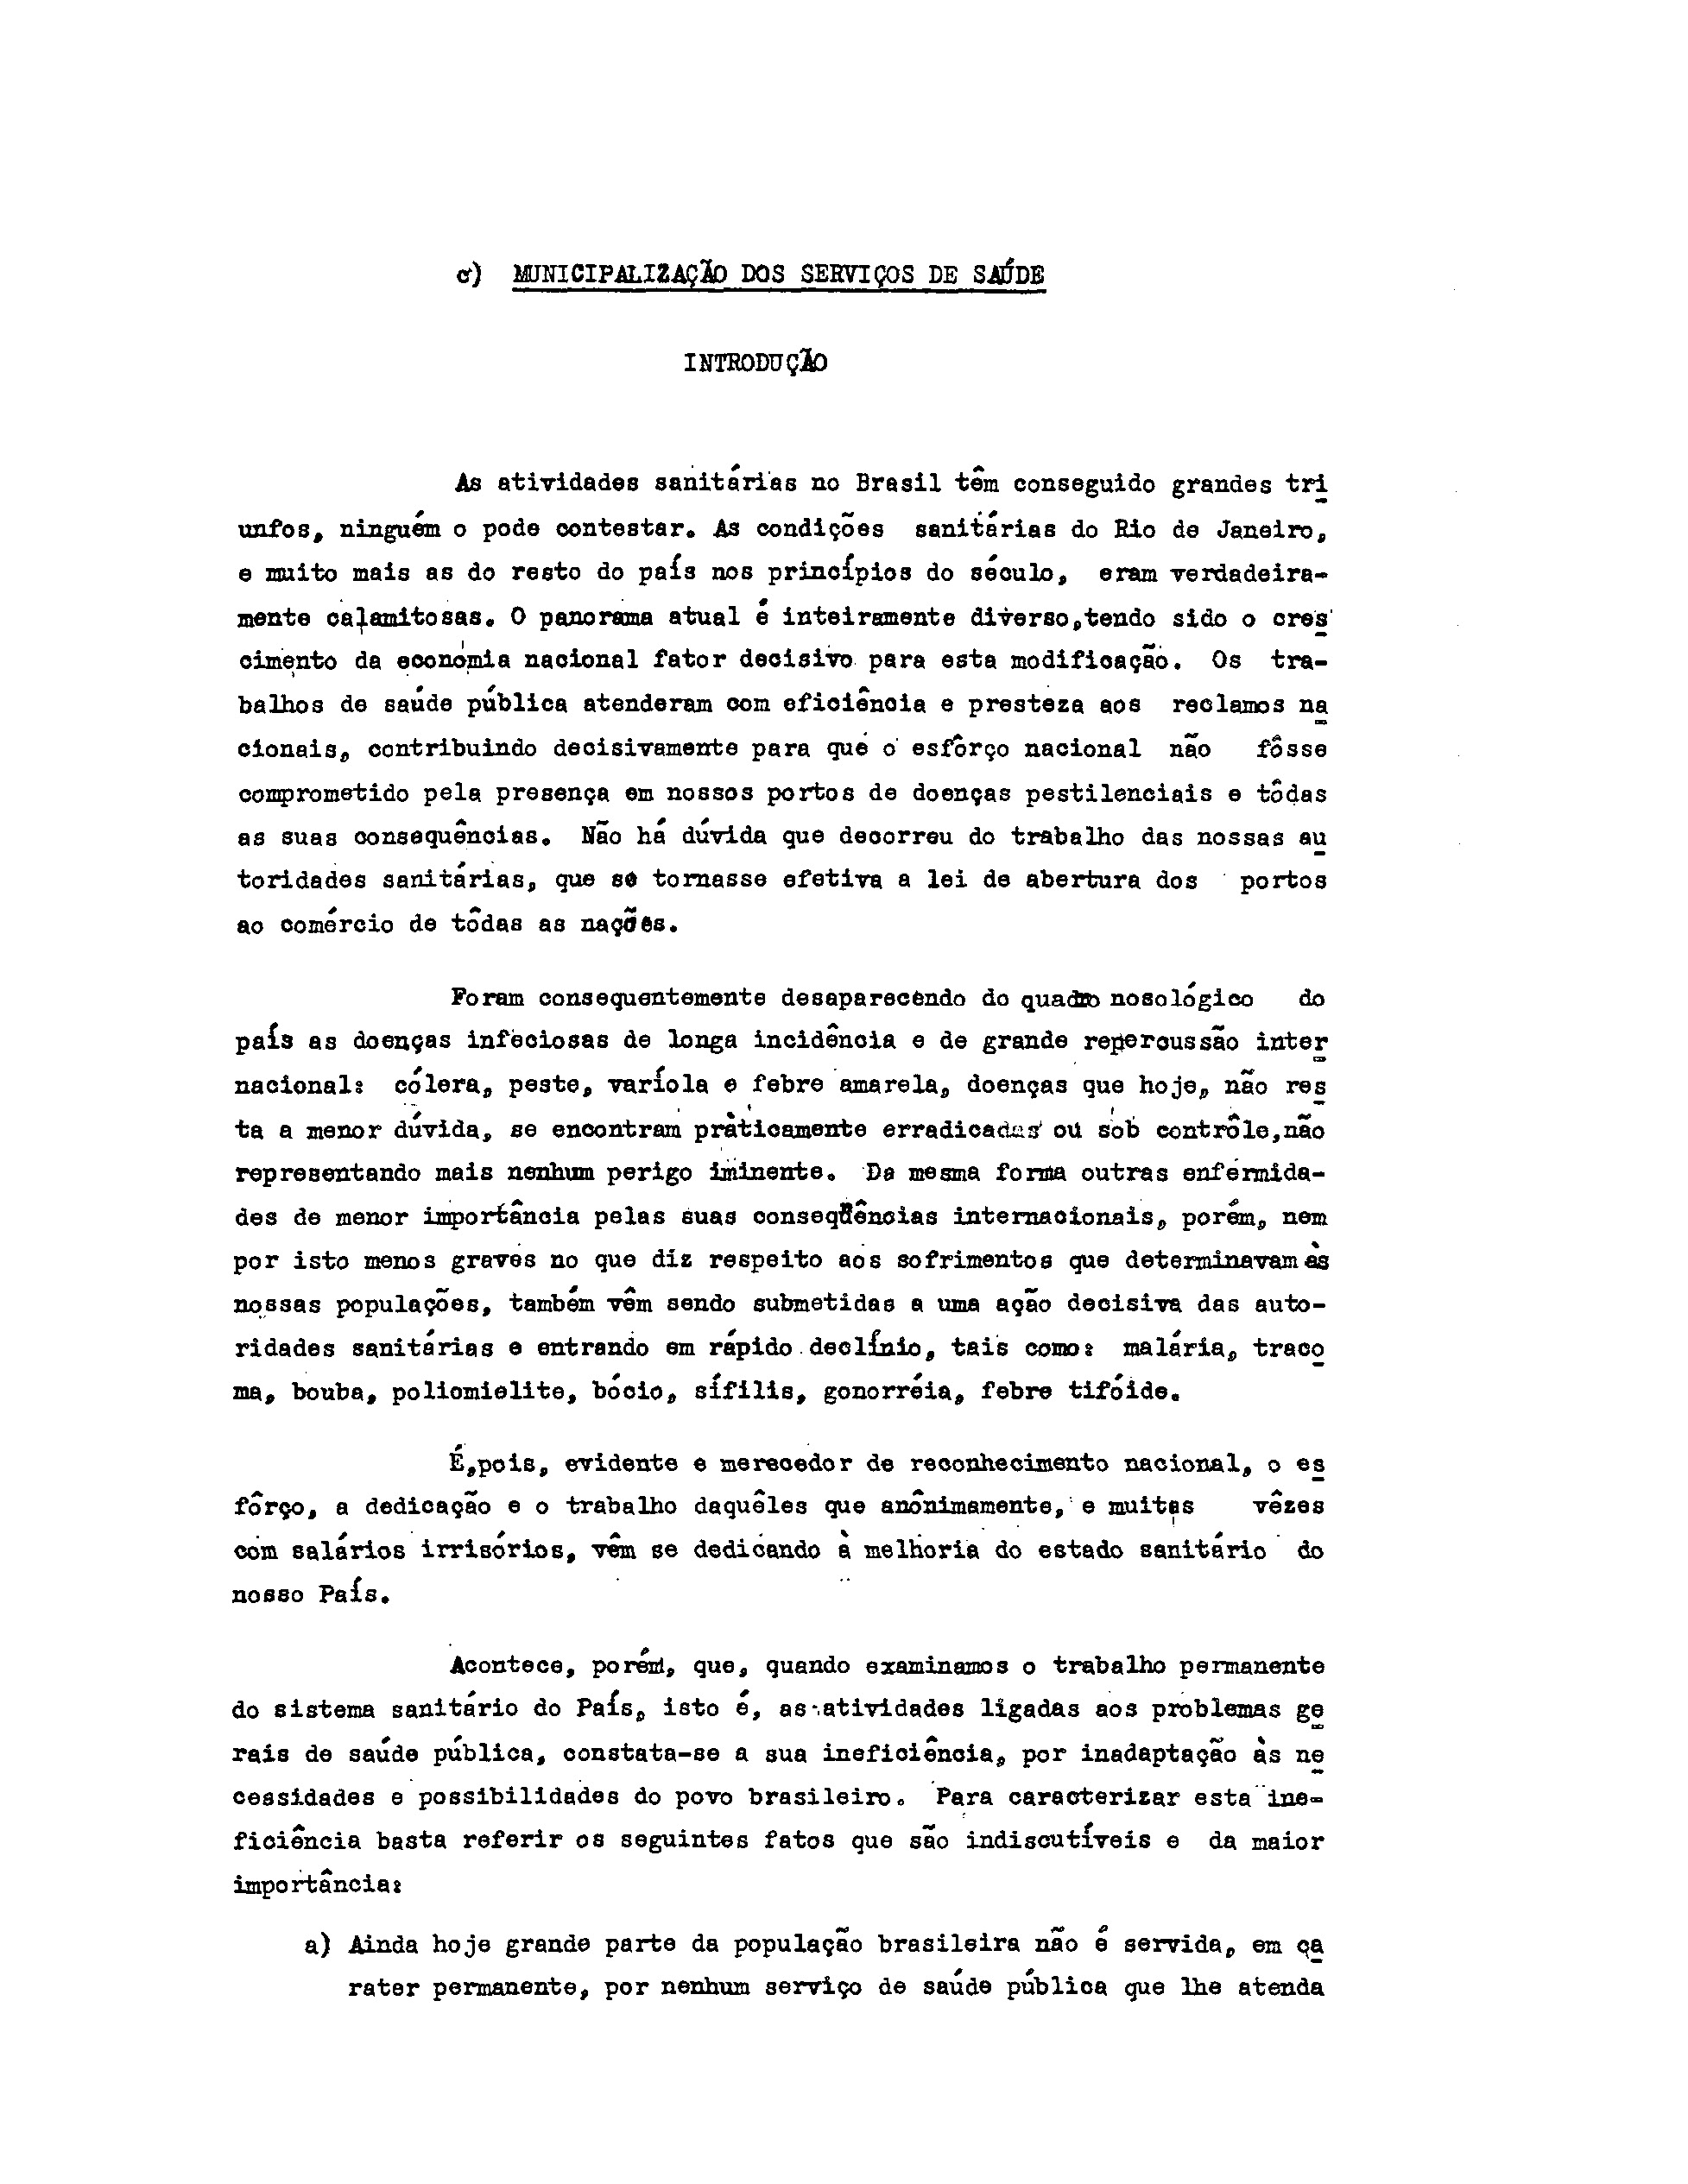 Foto de documento datilografado sobre a municipalização dos serviços de saúde.